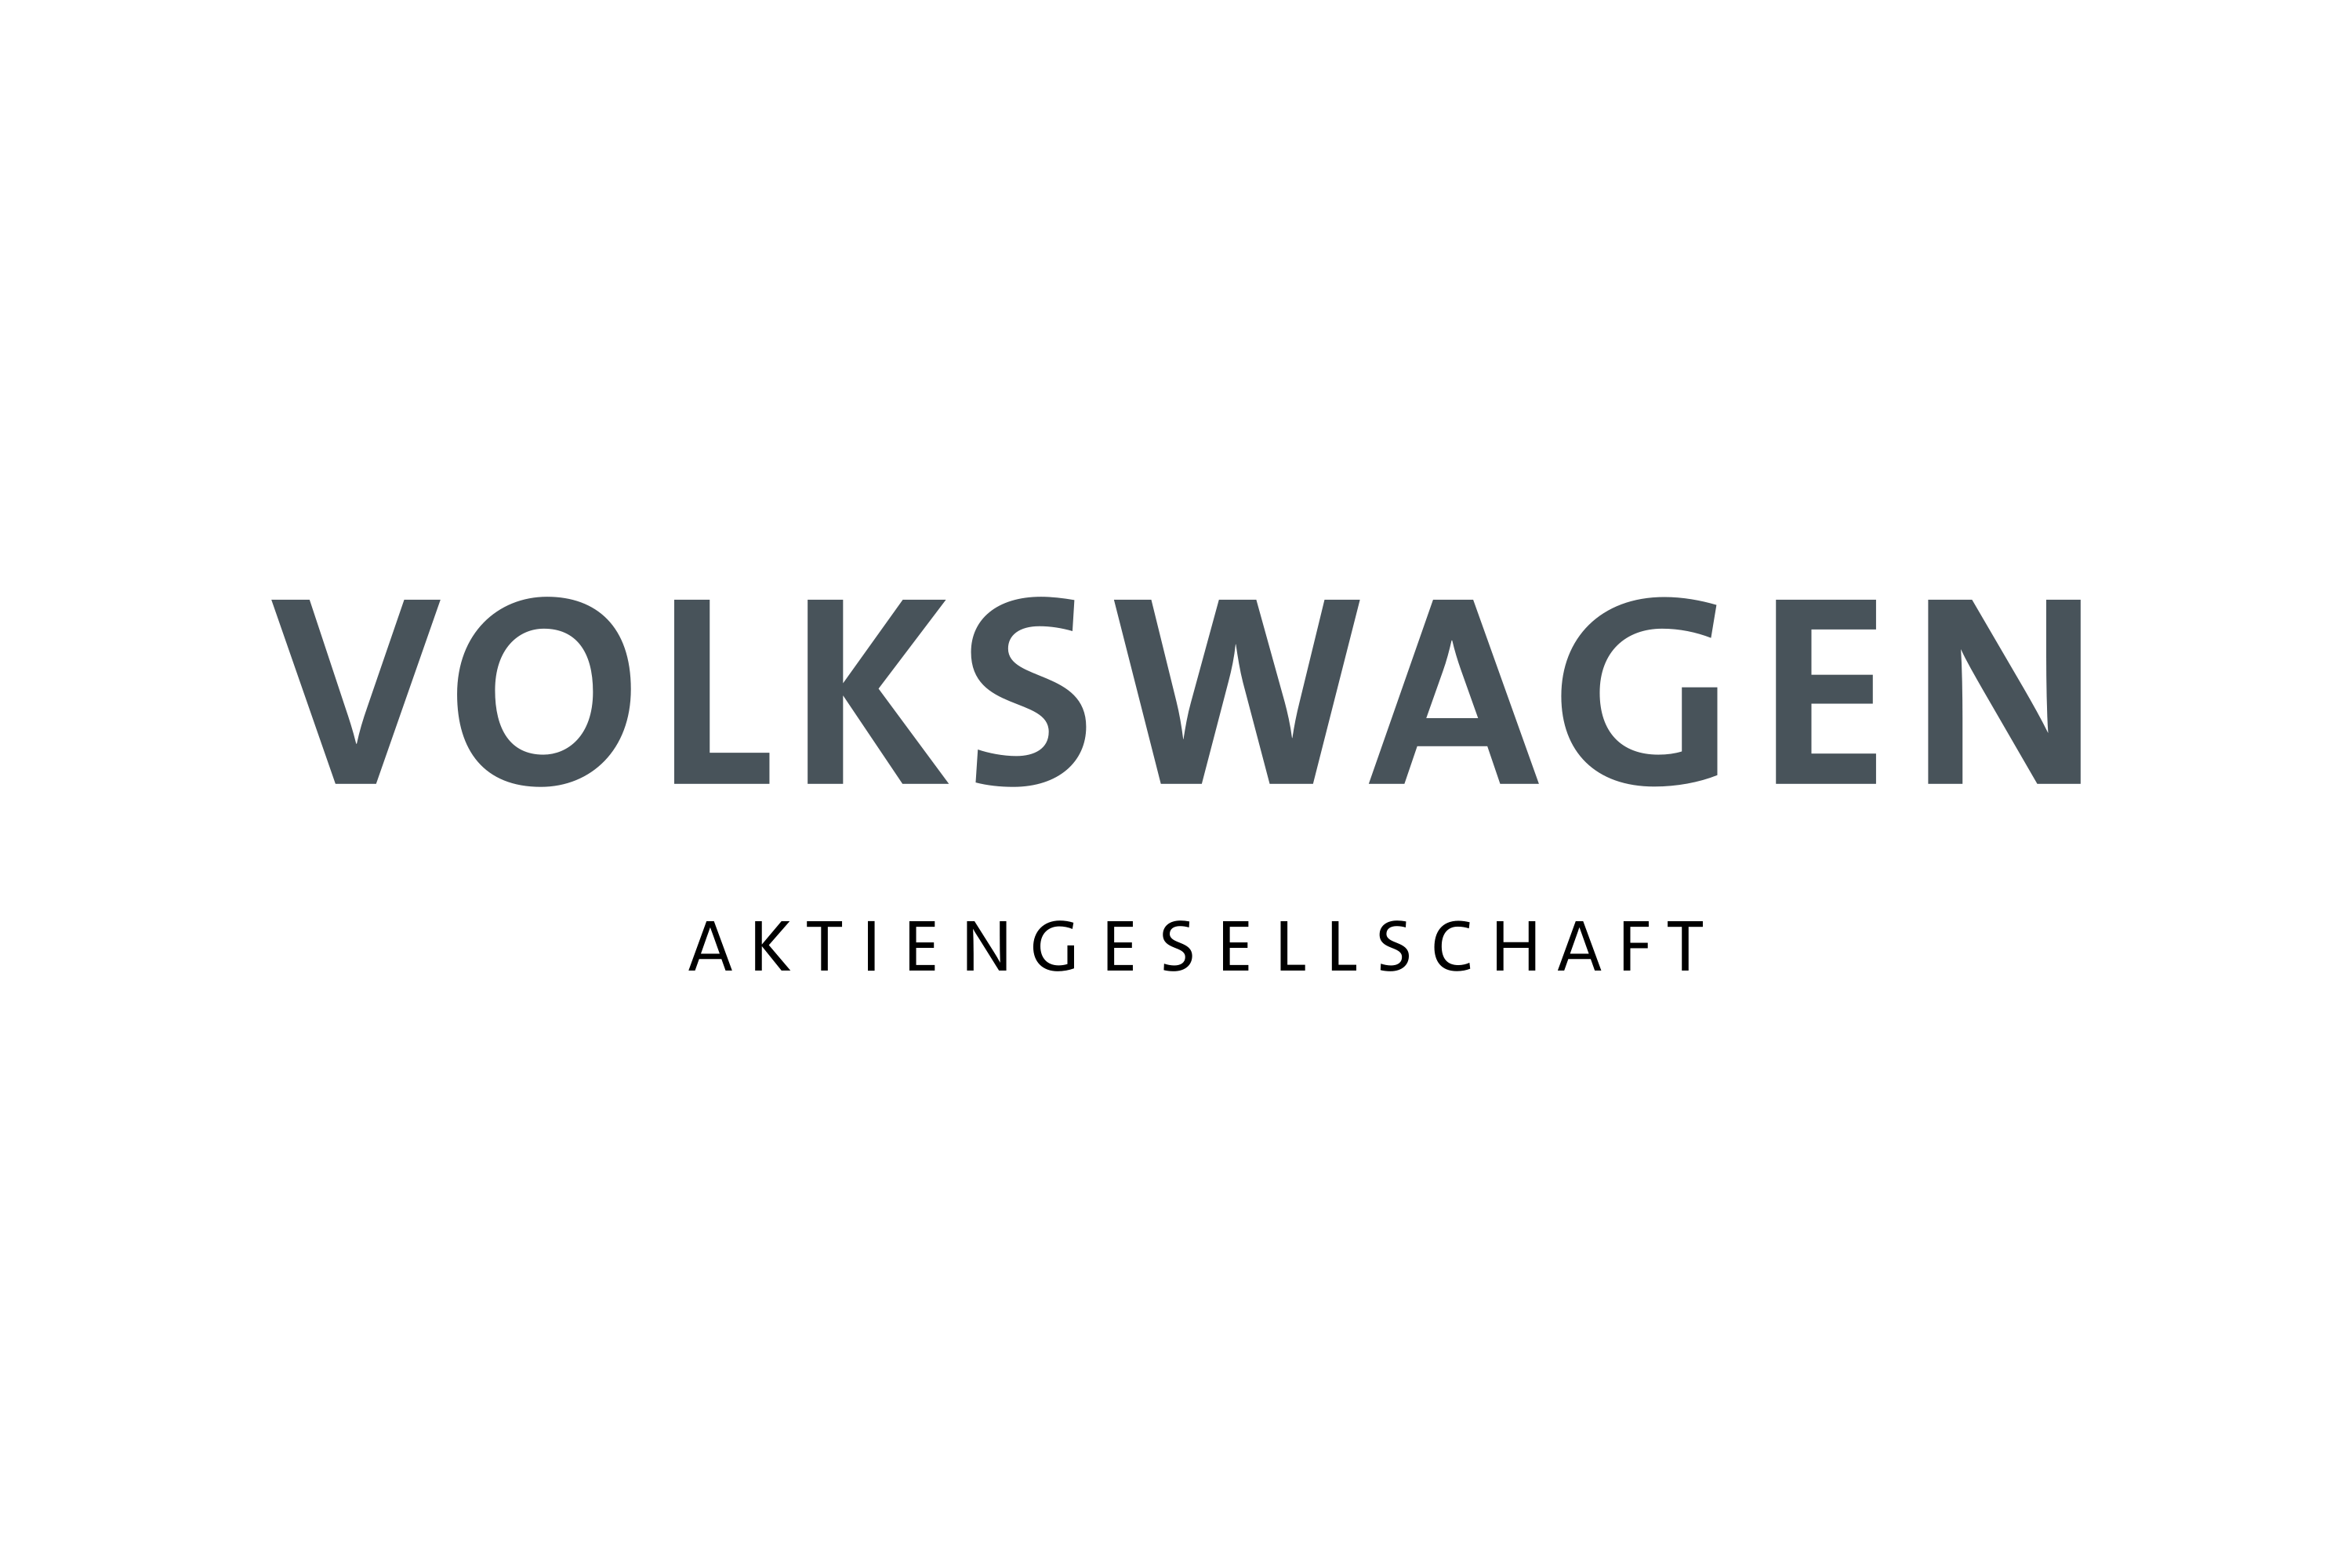 Download Volkswagen Group Logo in SVG Vector or PNG File Format